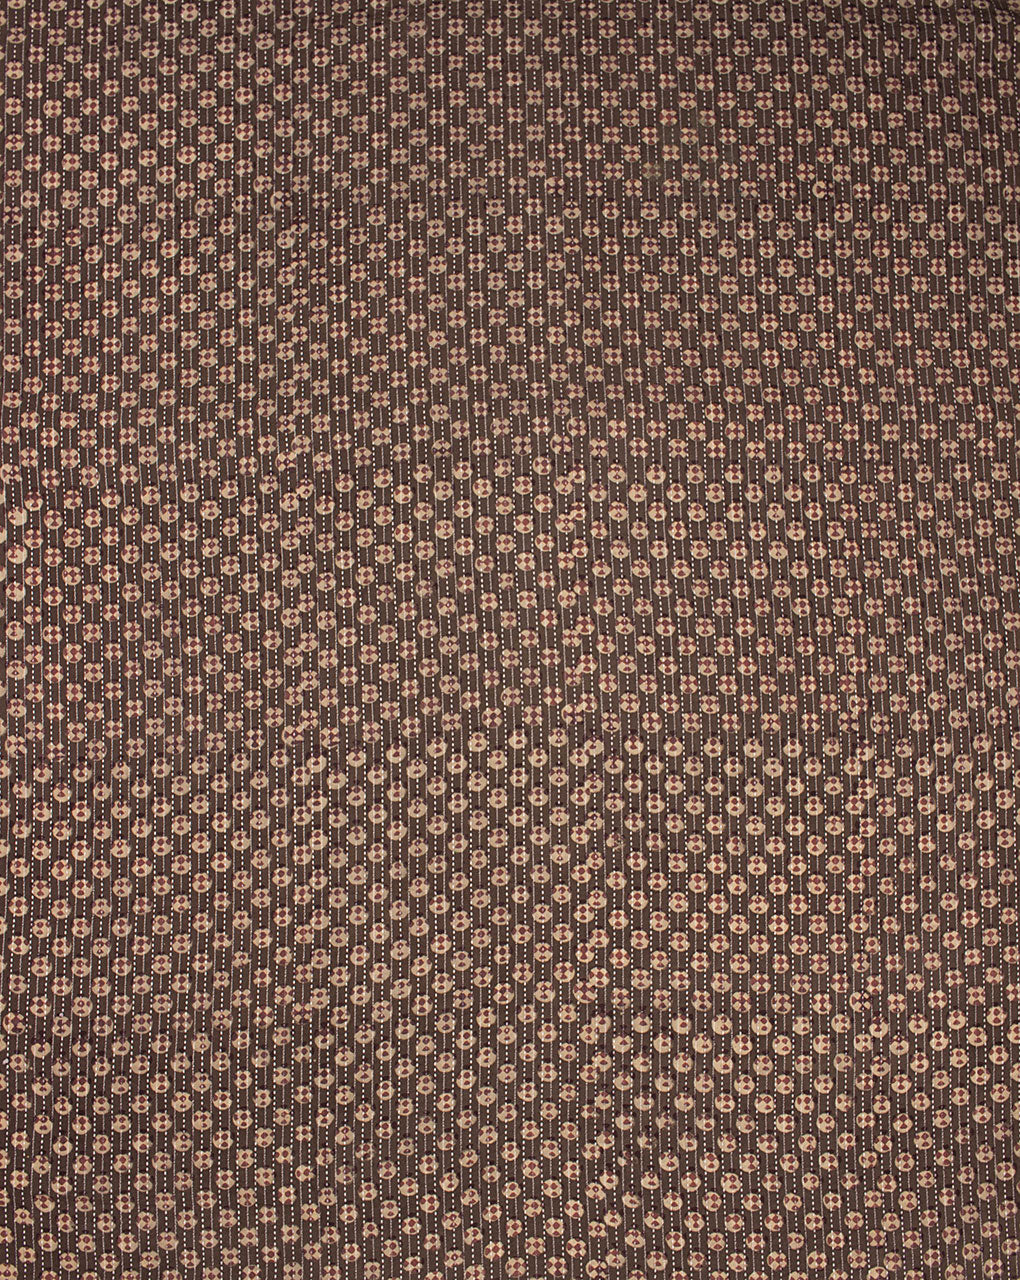 Azo-Free Certified Akola Hand Block Kantha Cotton Fabric - Fabriclore.com